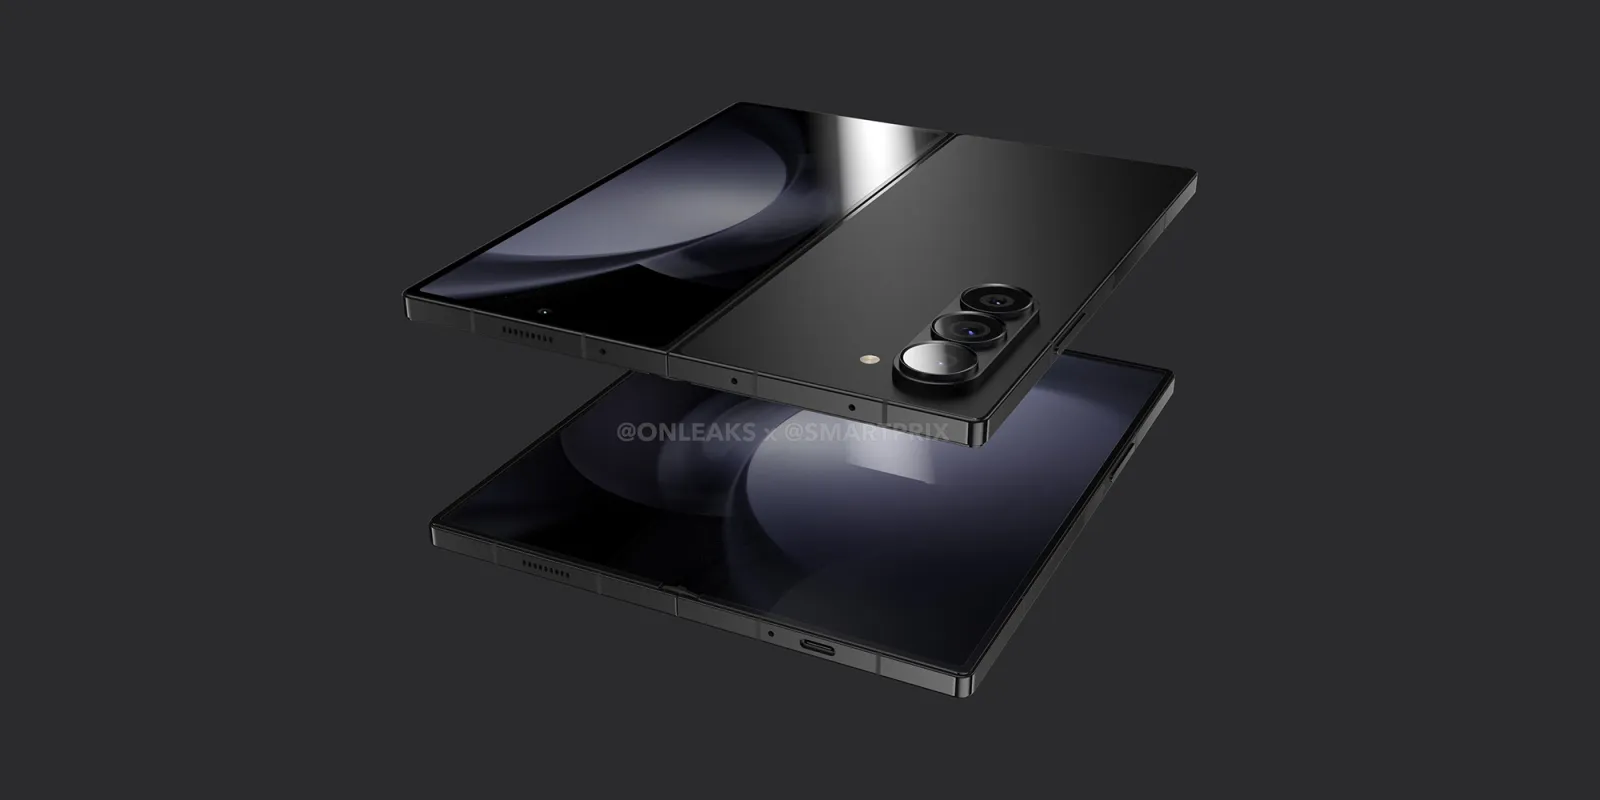 De Samsung Galaxy Fold 6 mock-up toont een hoekig ontwerp dat lijkt op de Galaxy S Ultra en Galaxy Note modellen.